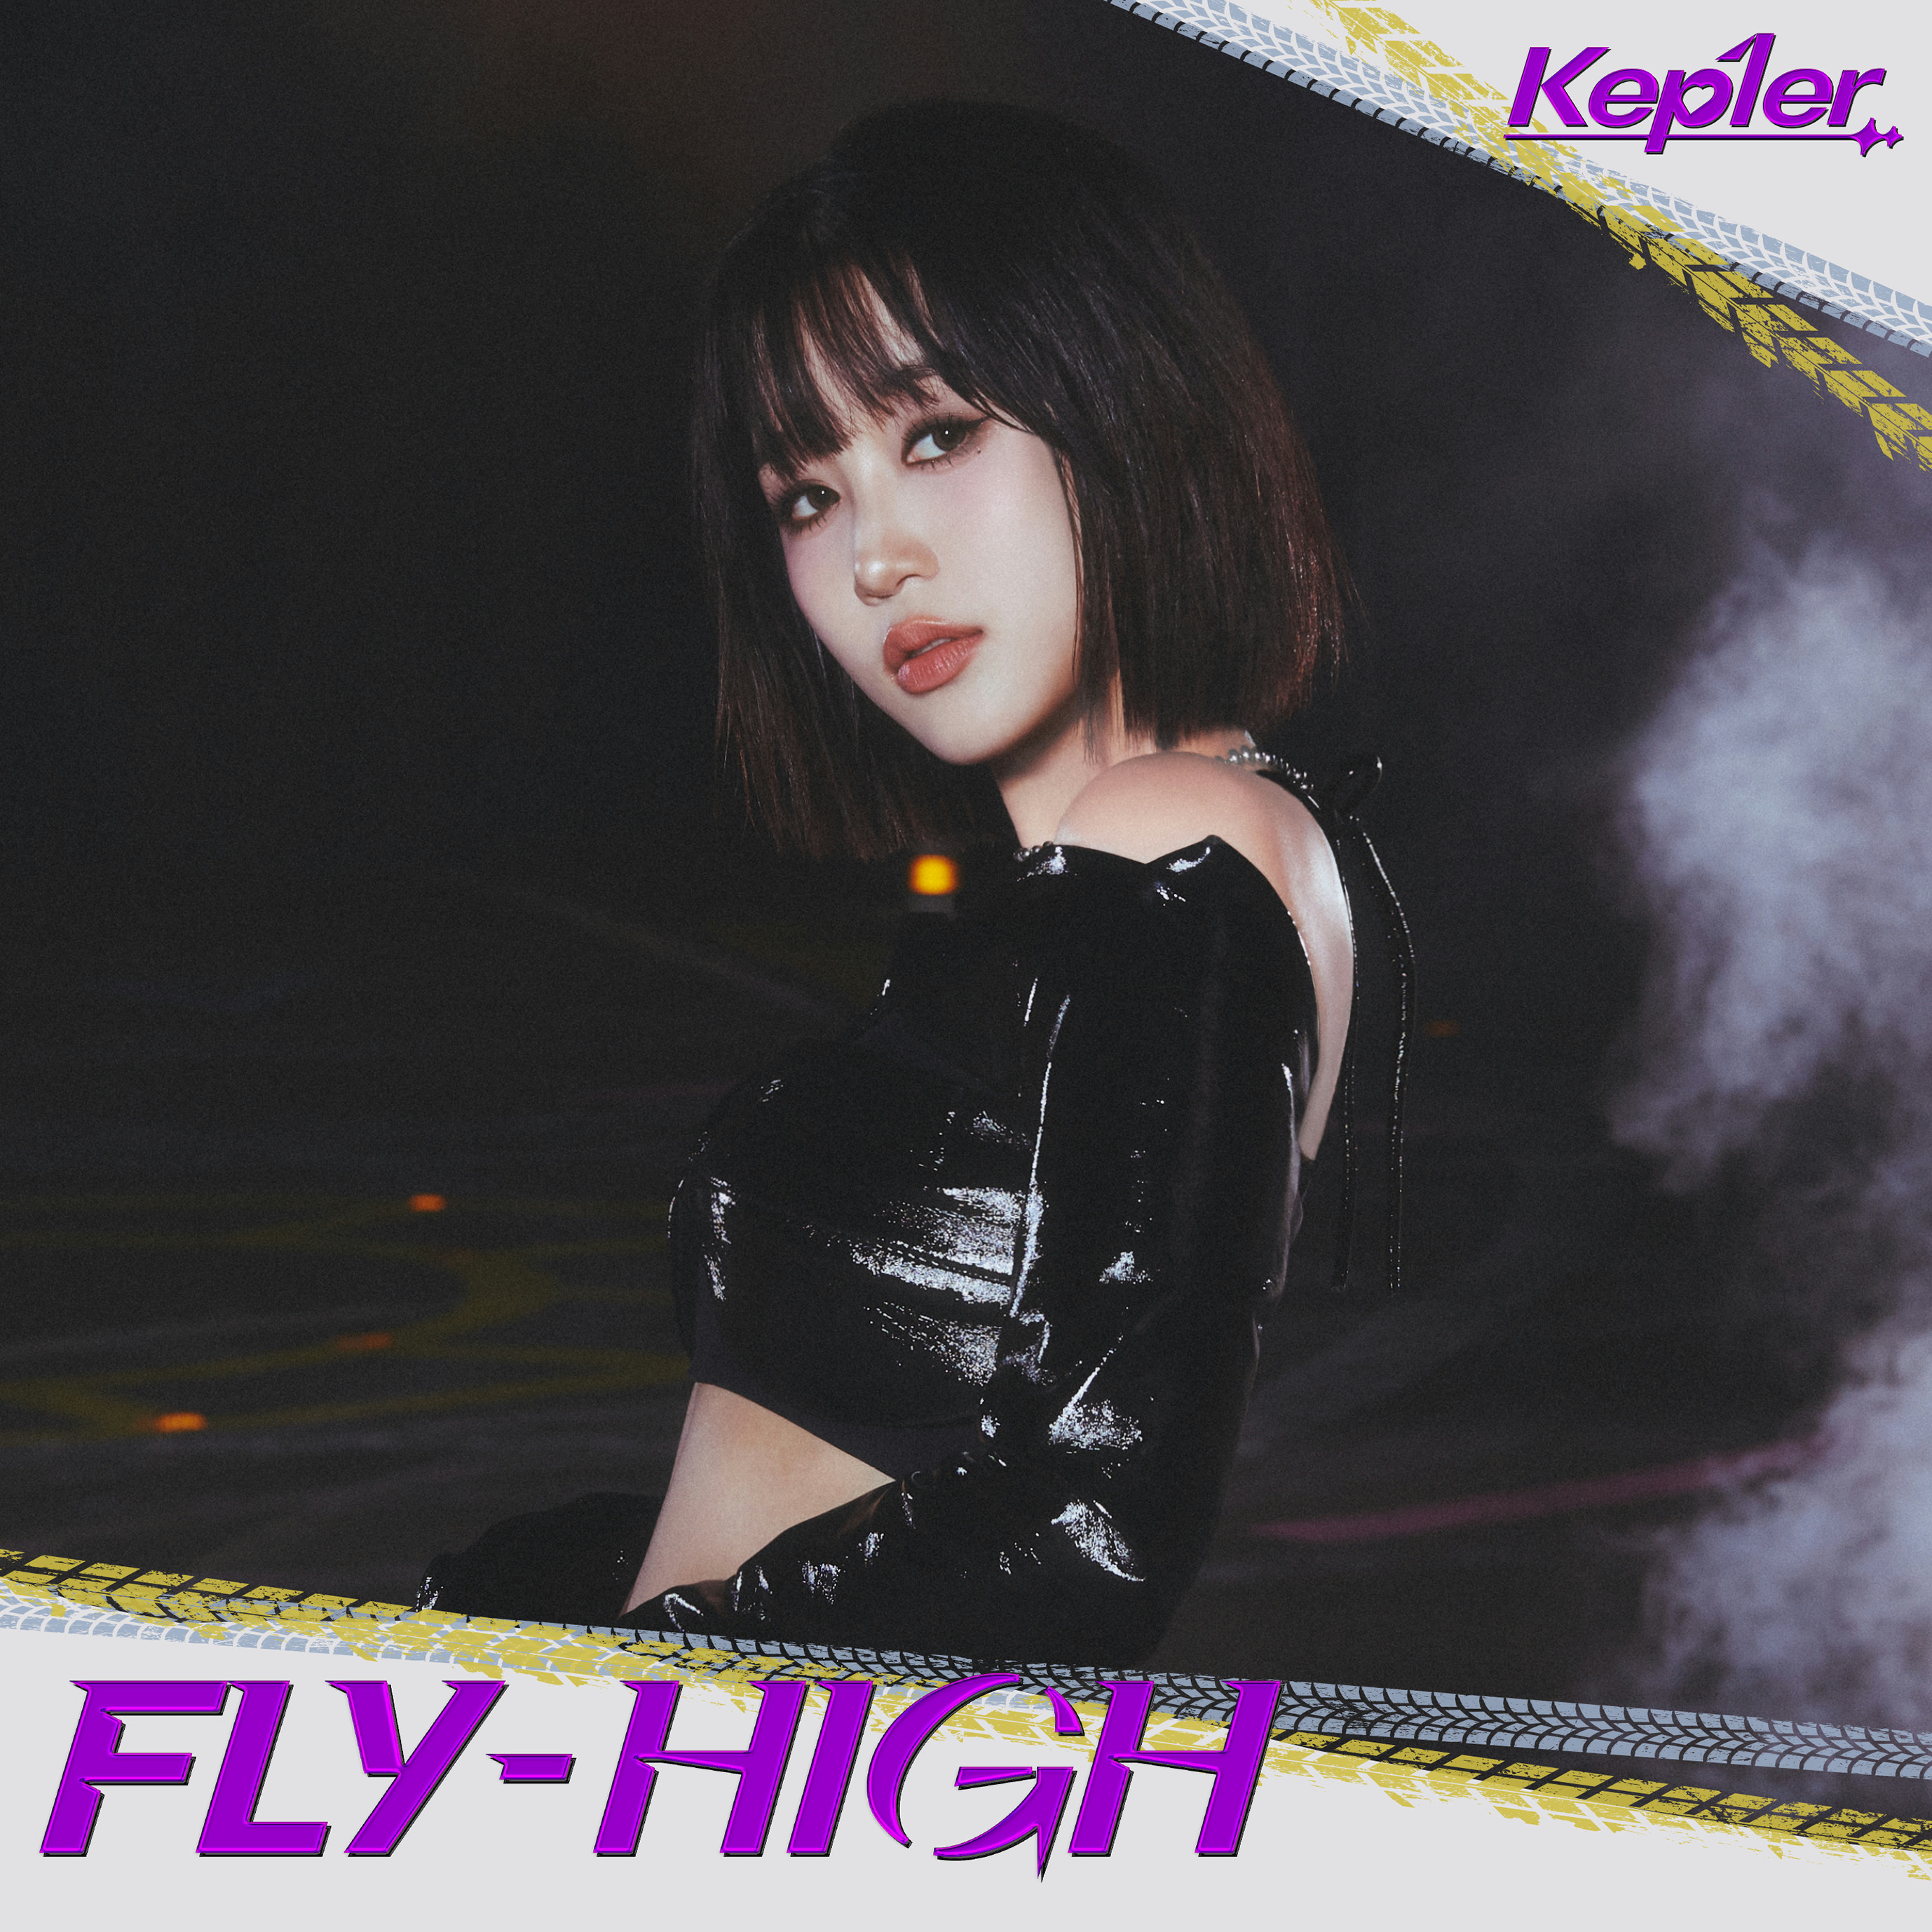 FLY-HIGH>【Kep1ian盤 (CHAEHYUN ver.)】 - 【Kep1ian Japan】Kep1er 